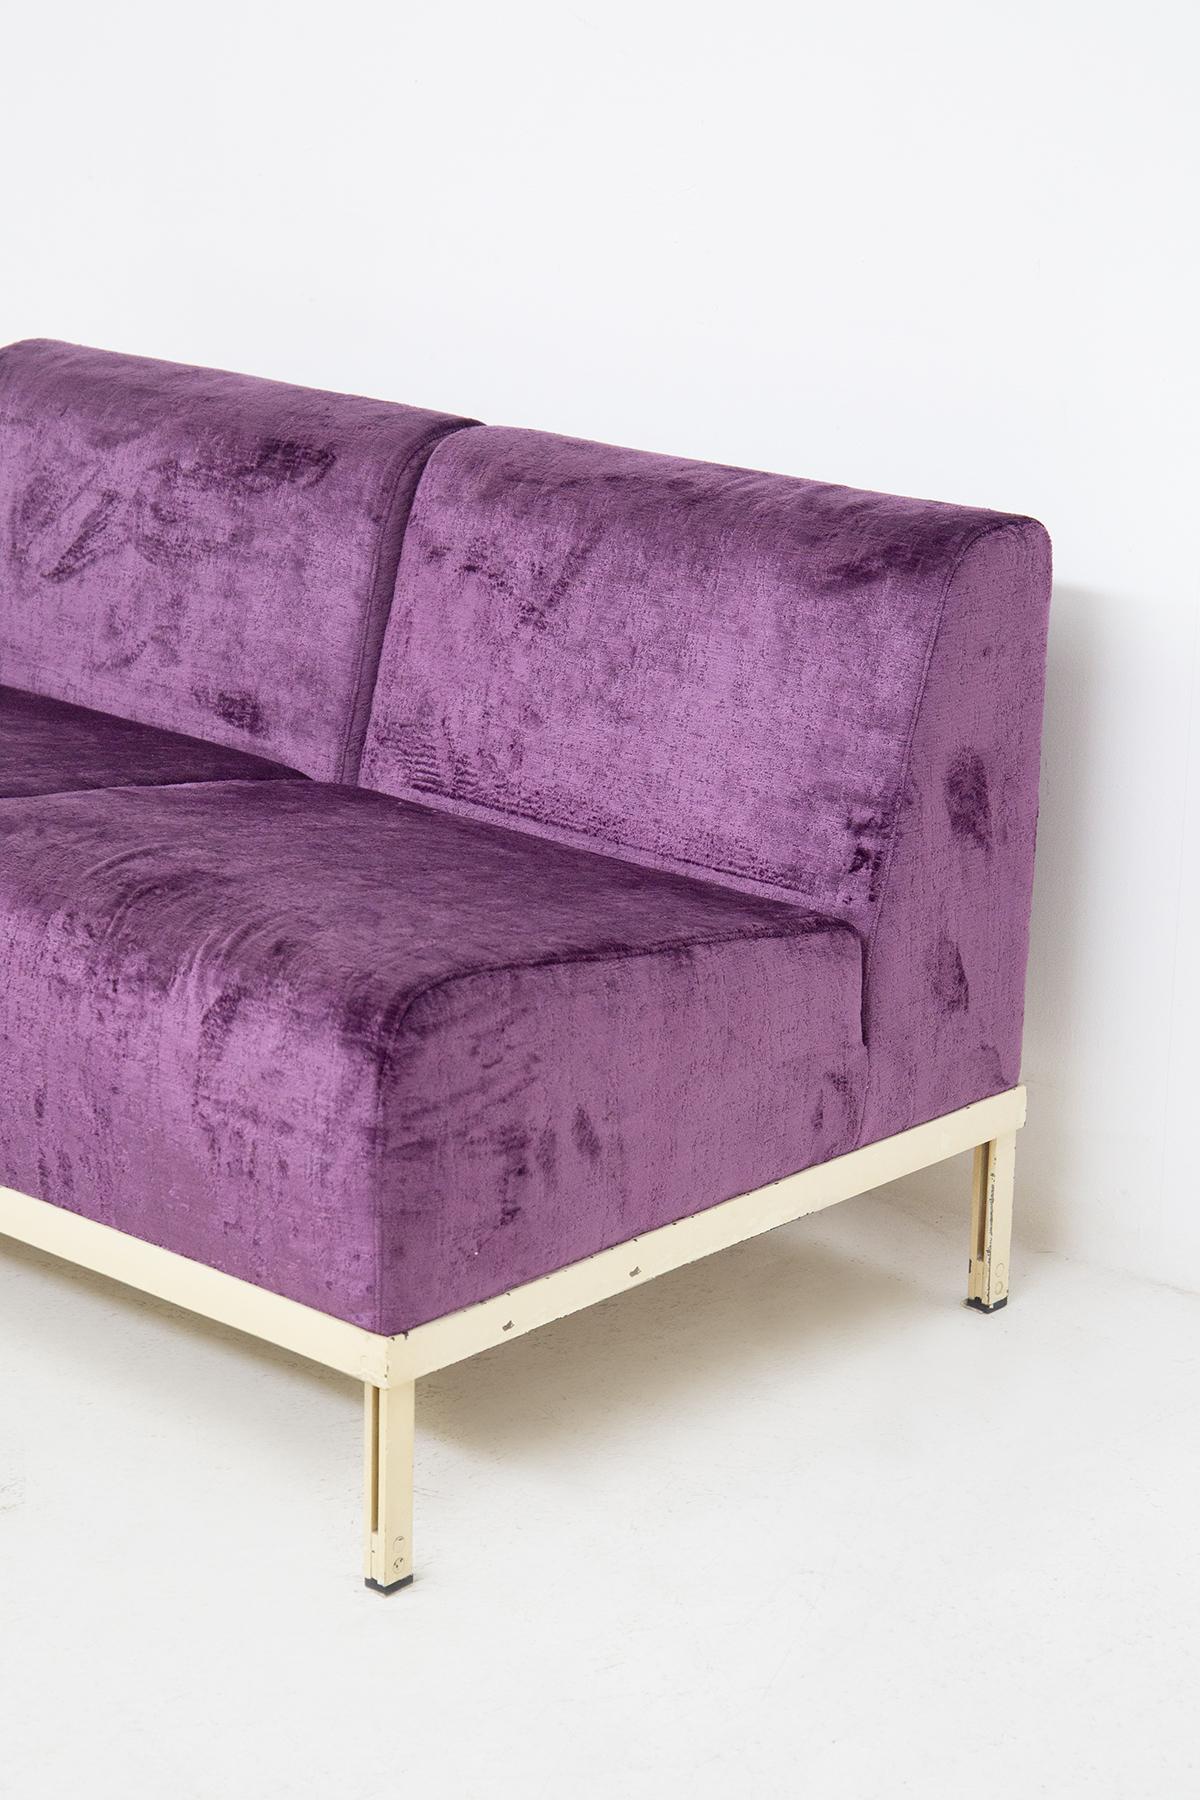 Merveilleux ensemble de canapés conçus par Gianfranco Frattini dans les années 50, de fabrication italienne de qualité.
Le canapé trois places est composé de trois sièges et d'une petite table insérée dans le corps du canapé comme quatrième